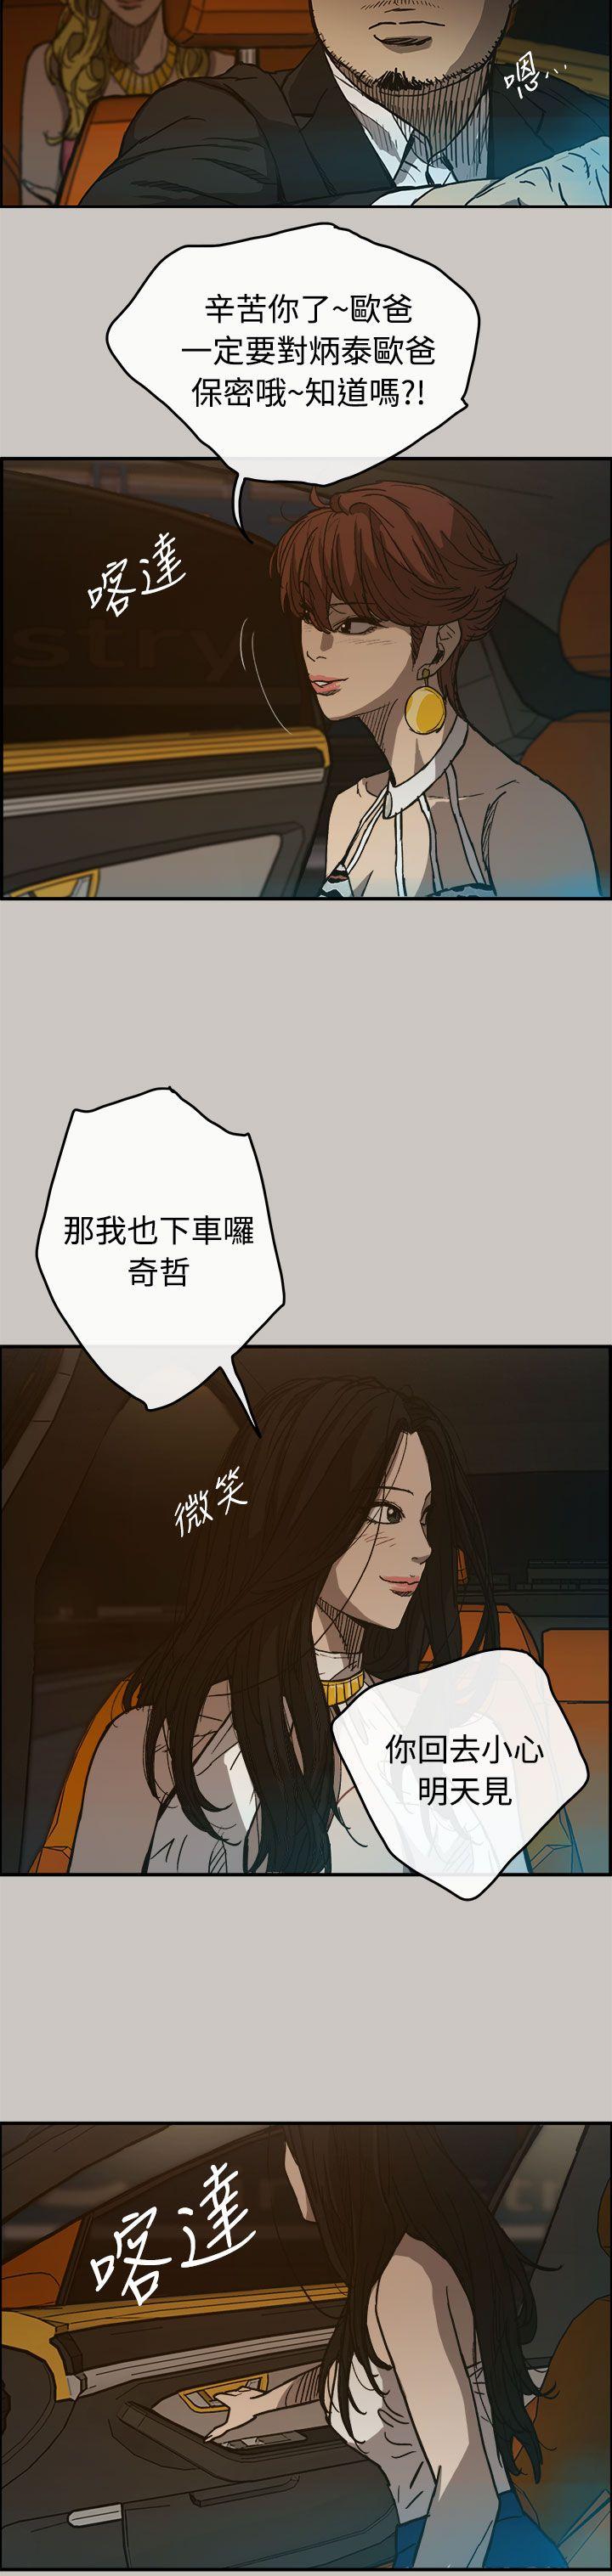 韩国污漫画 MAD:小姐與司機 第15话 21